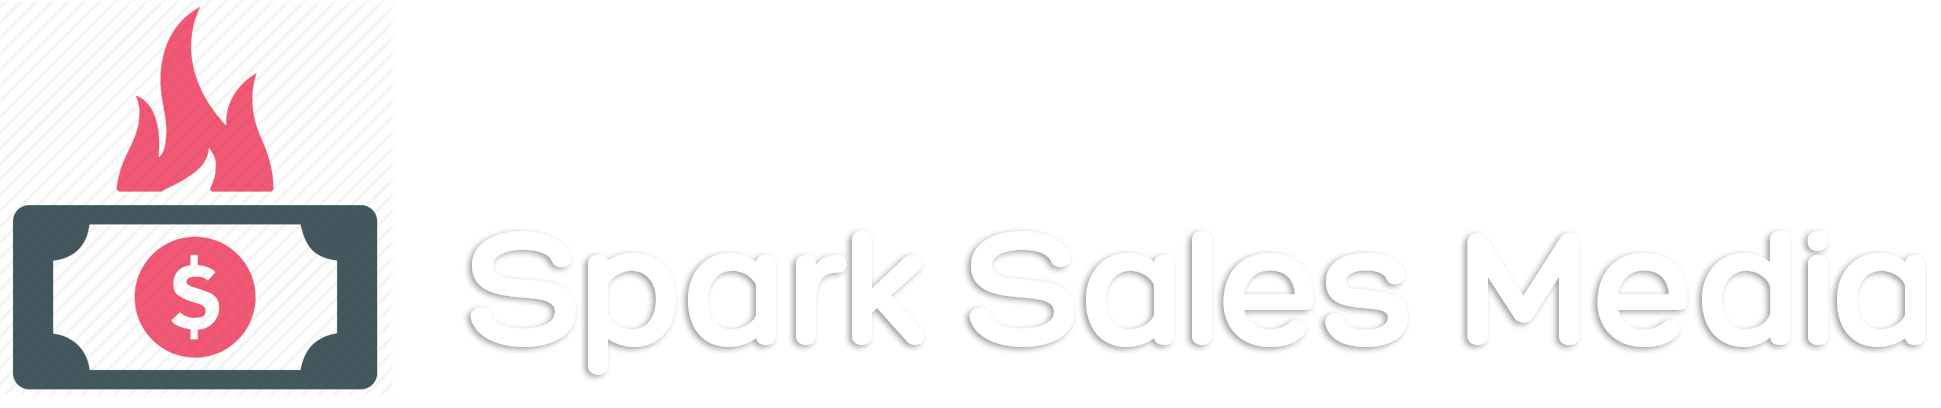 Spark Sales Media